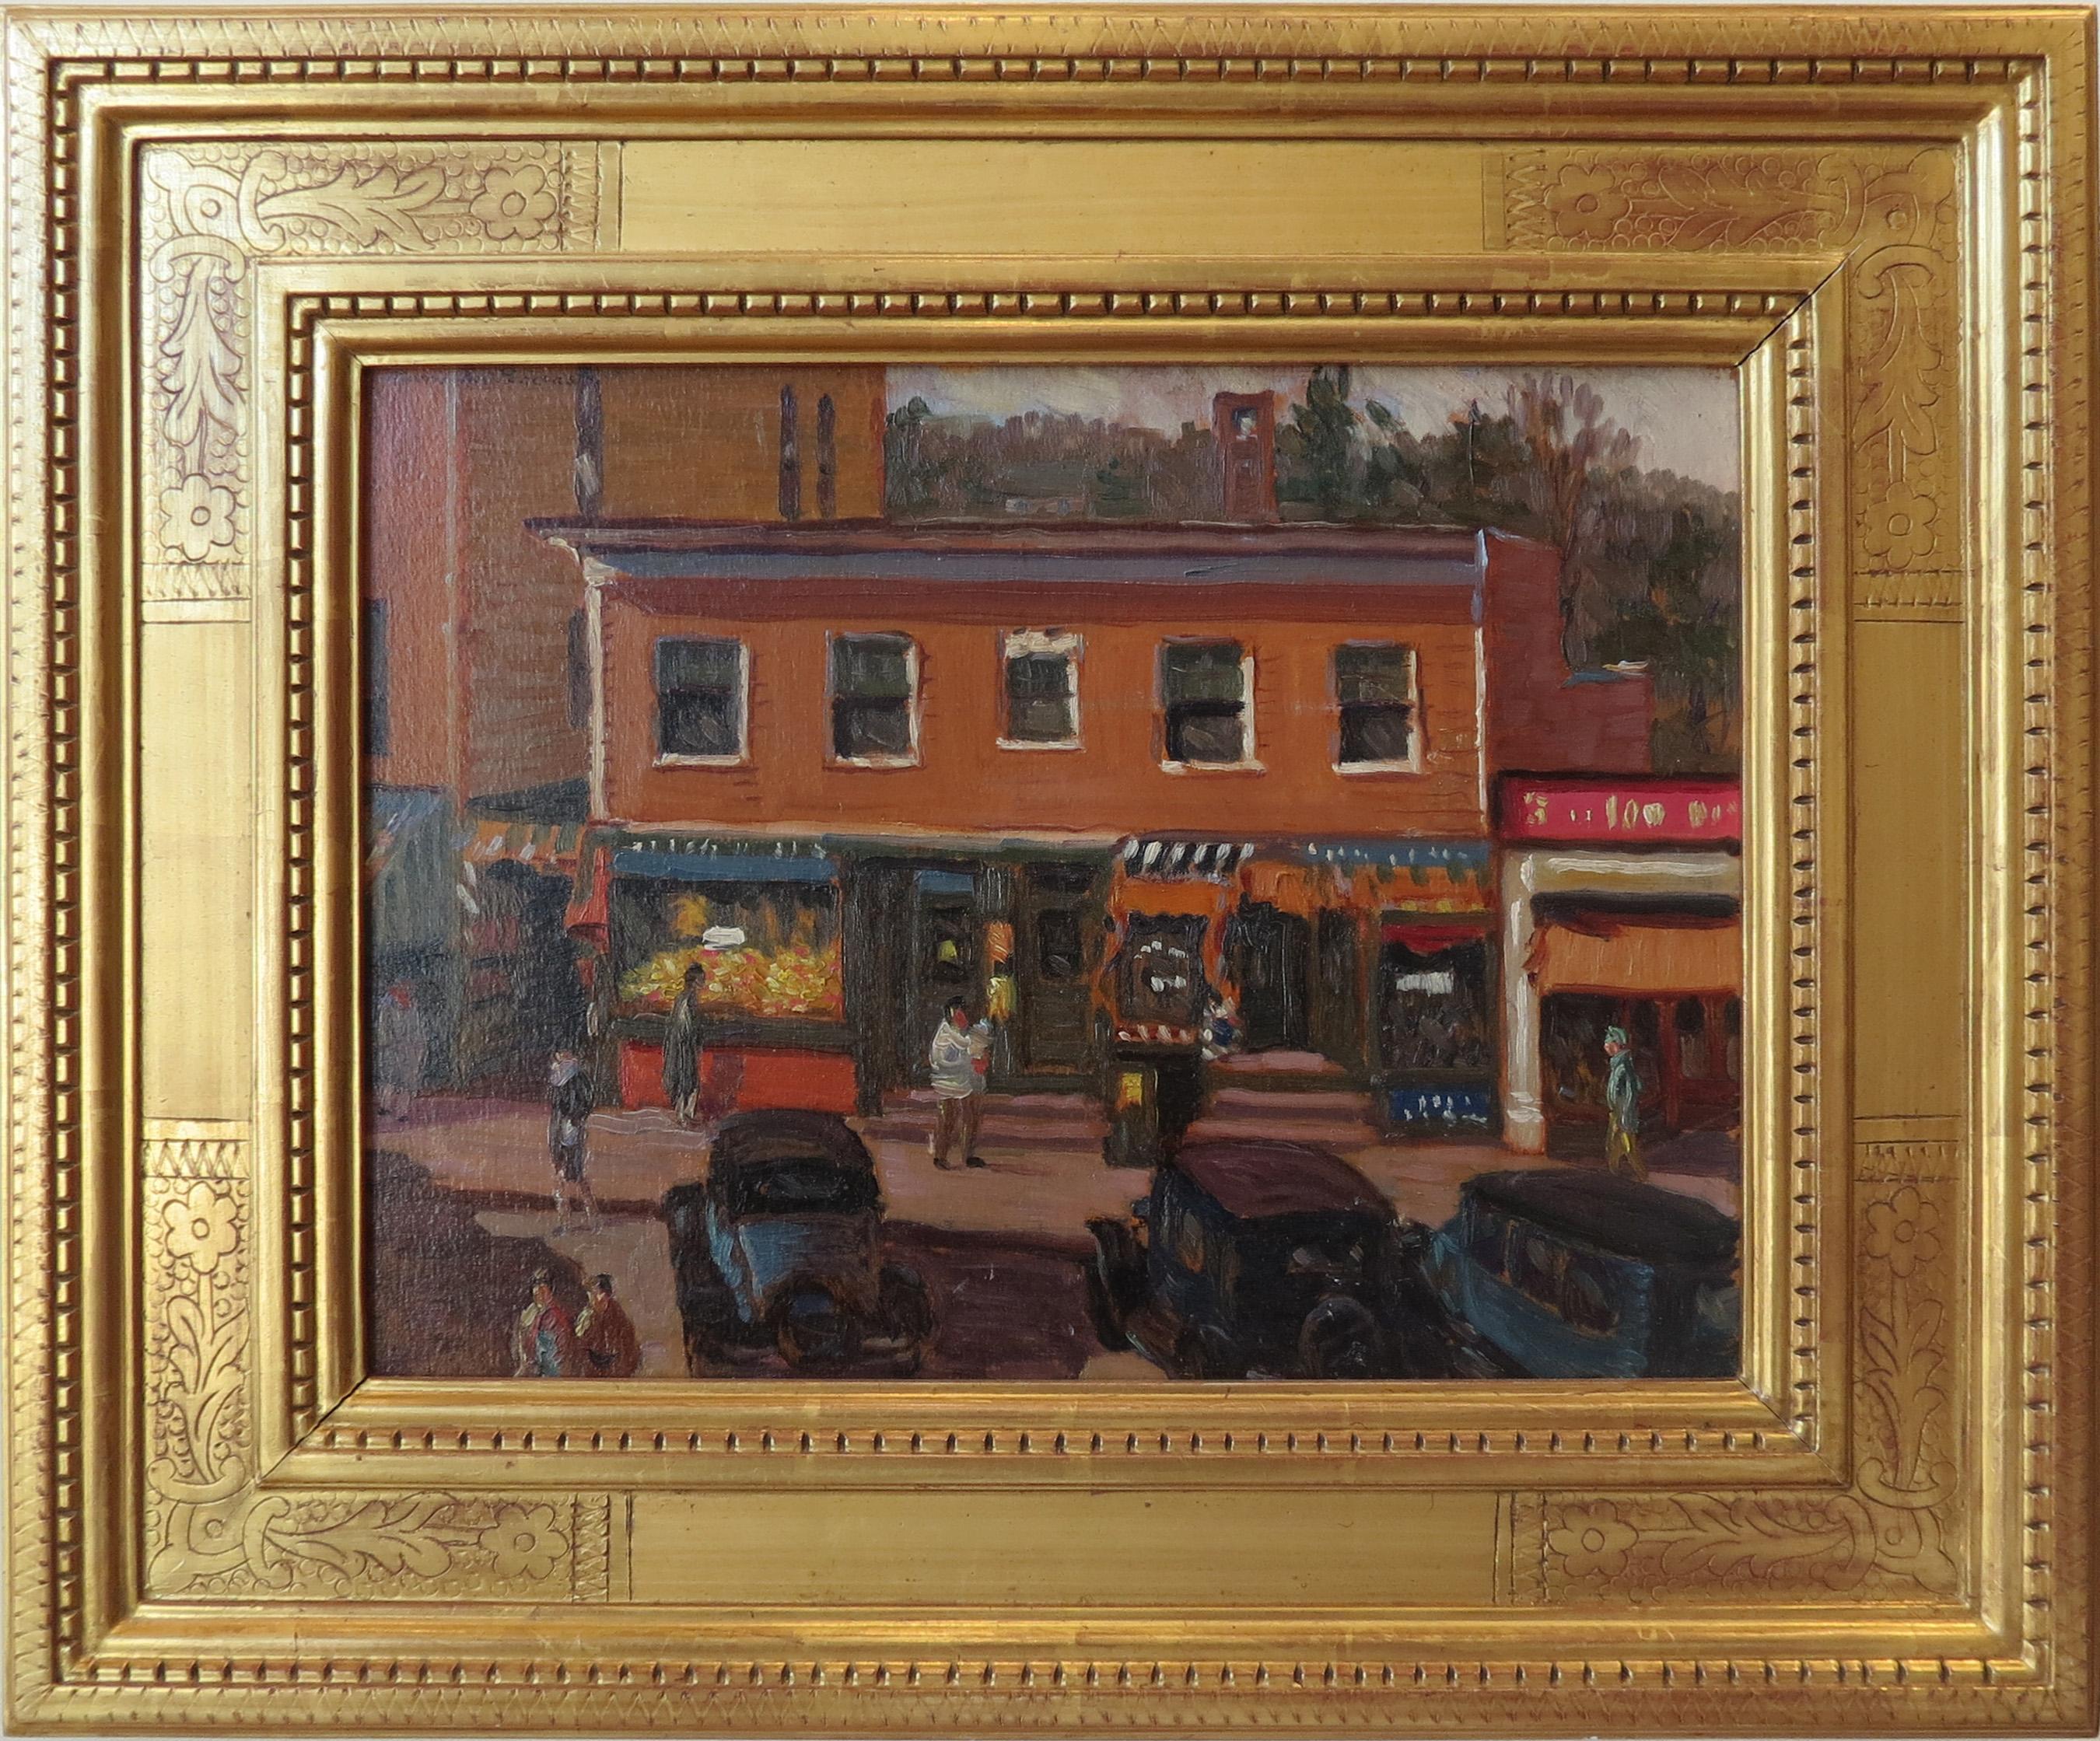 Morris Hall Pancoast Landscape Painting - "Main Street"